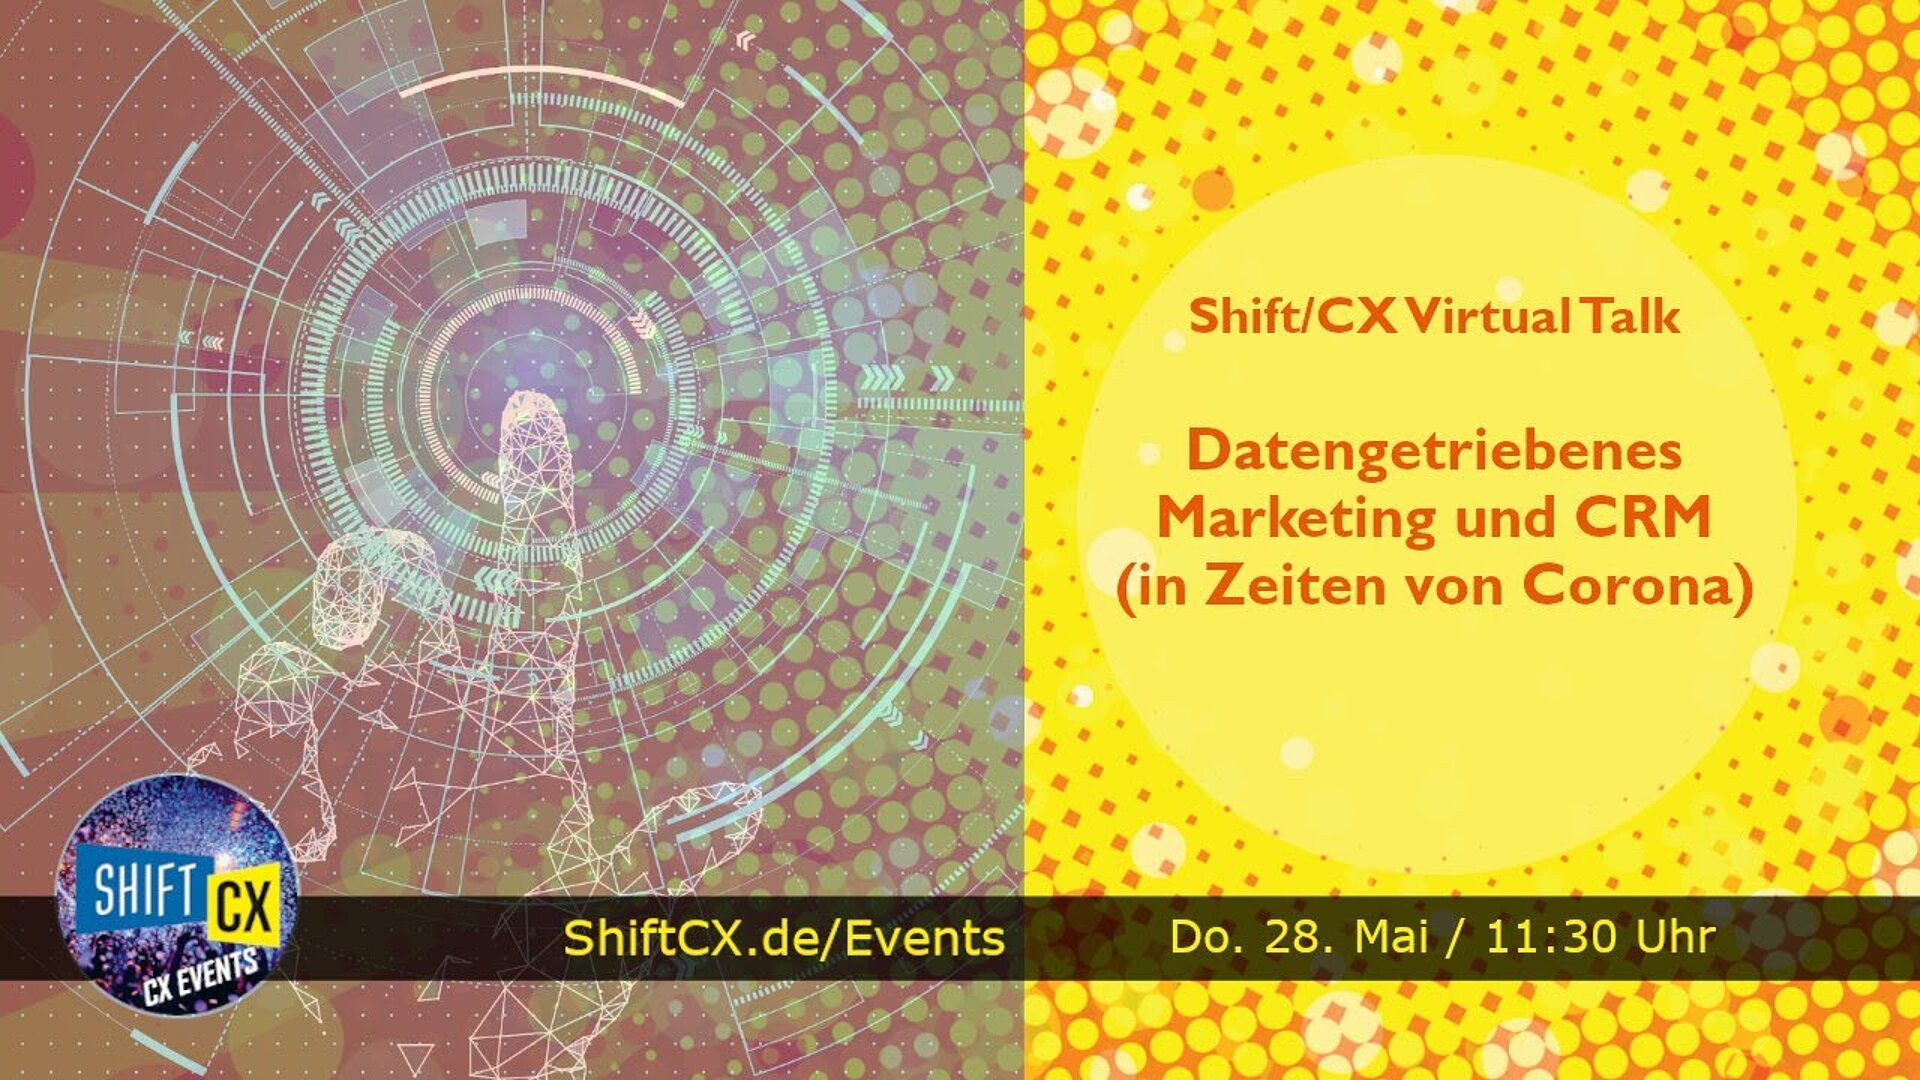 Shift/CX Virtual Talk: Datengetriebenes Marketing und CRM (in Zeiten von Corona)